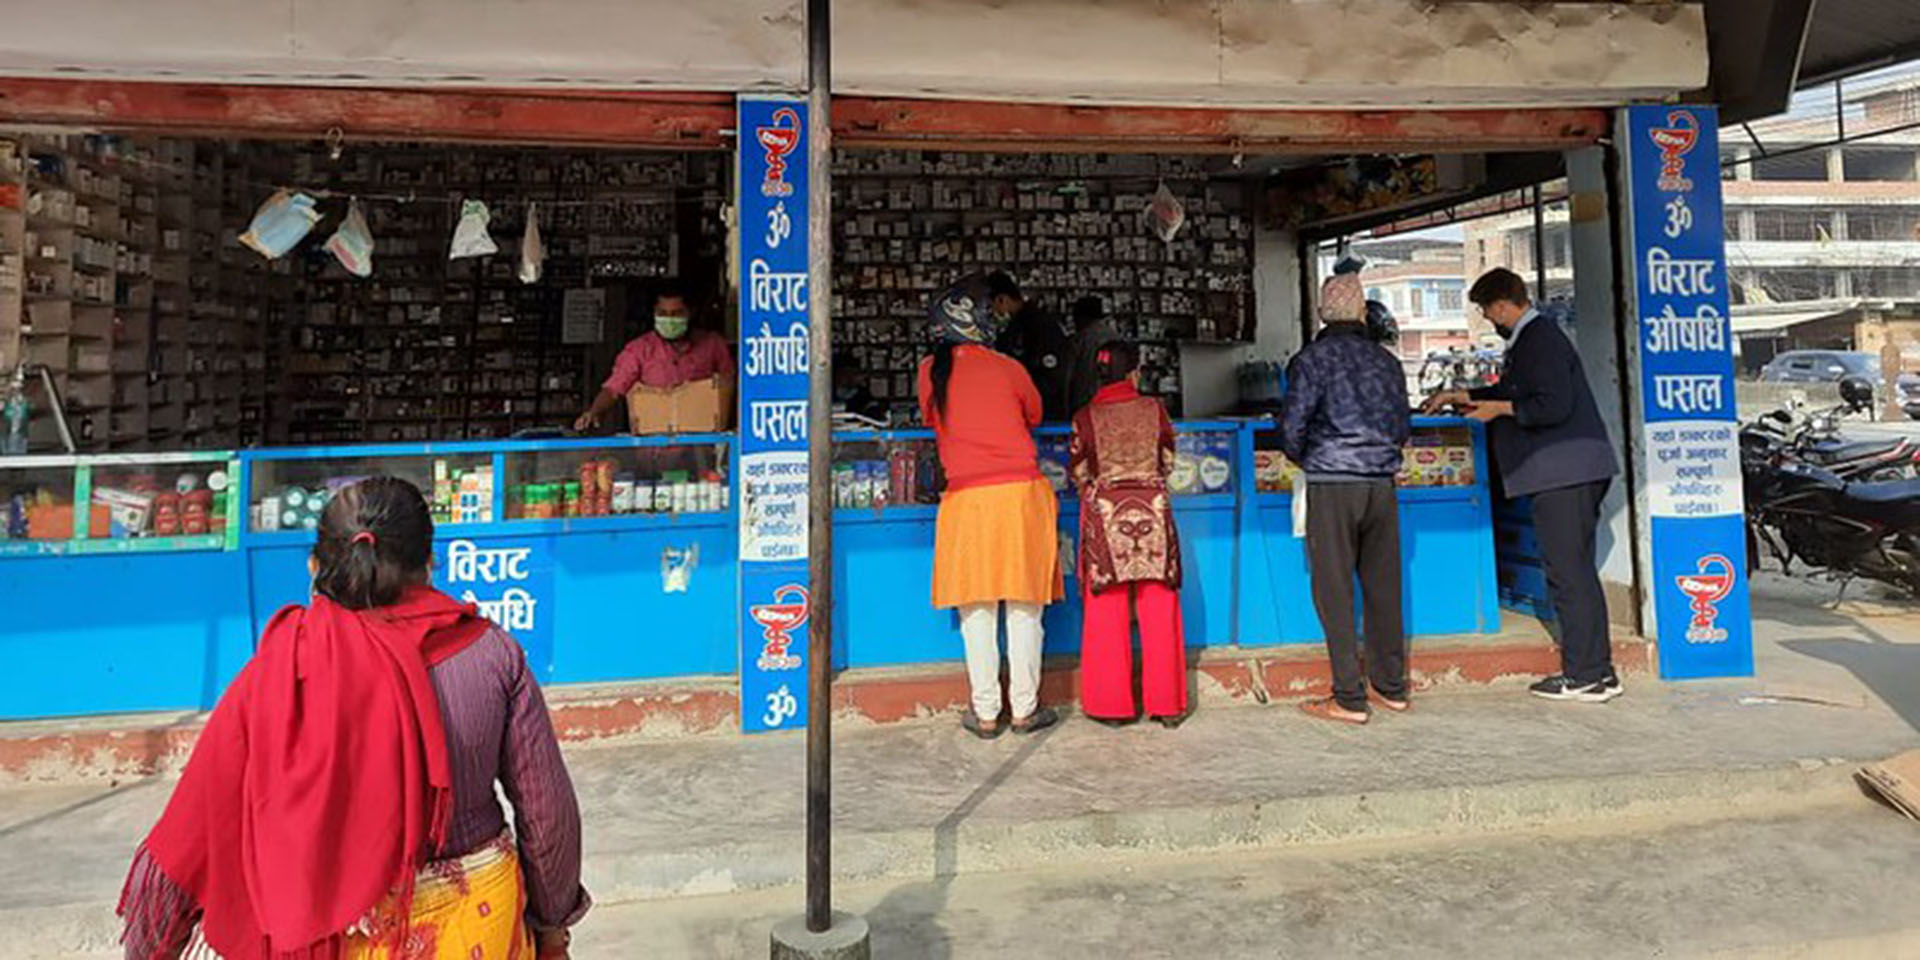 A pharmacy in Nepal